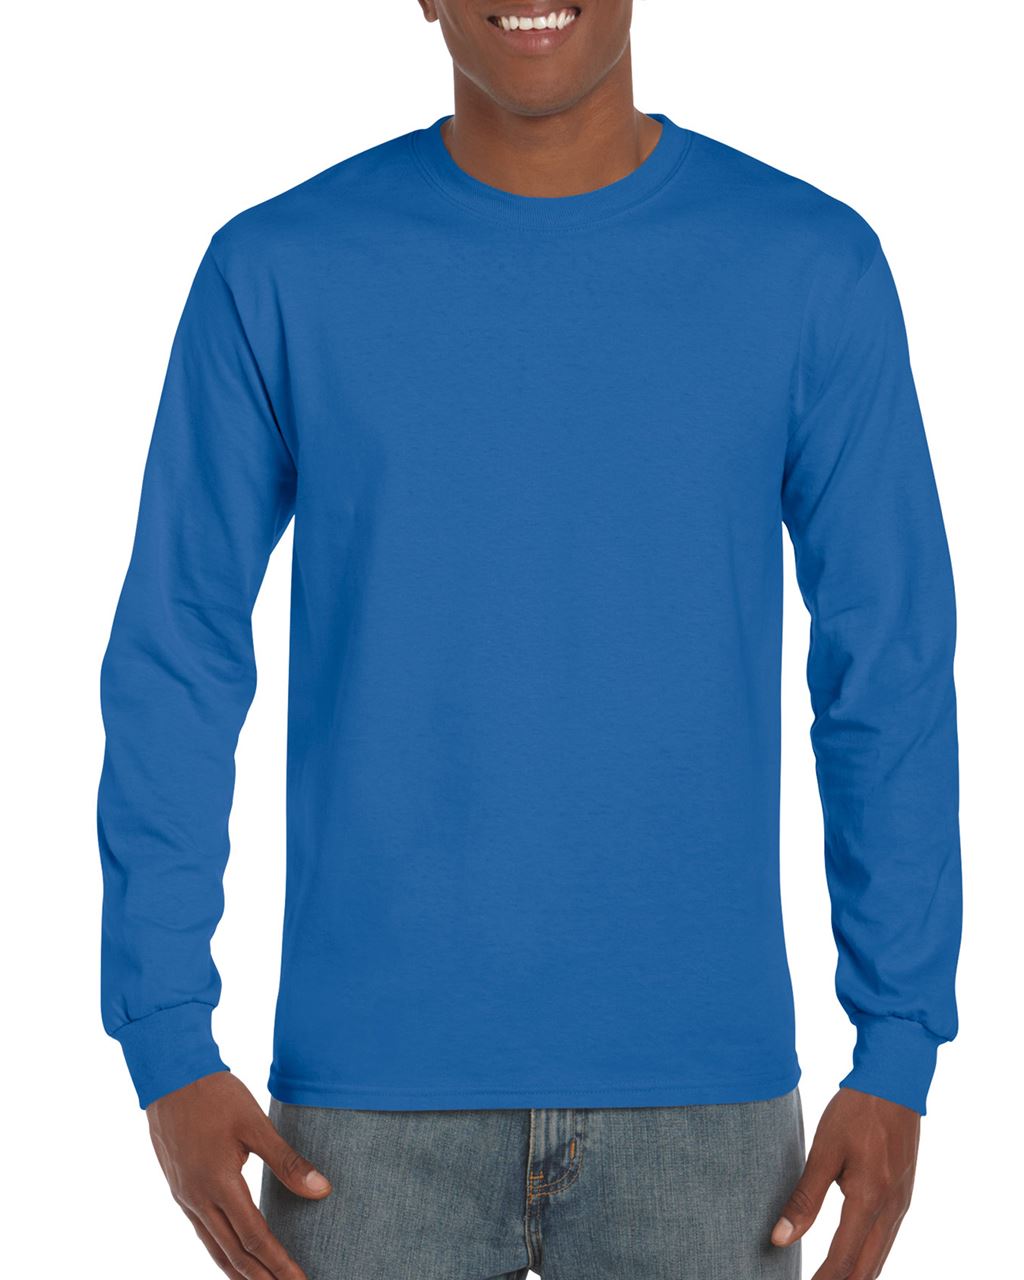 Gildan Ultra Cotton™ Adult Long Sleeve T-shirt - Gildan Ultra Cotton™ Adult Long Sleeve T-shirt - Royal